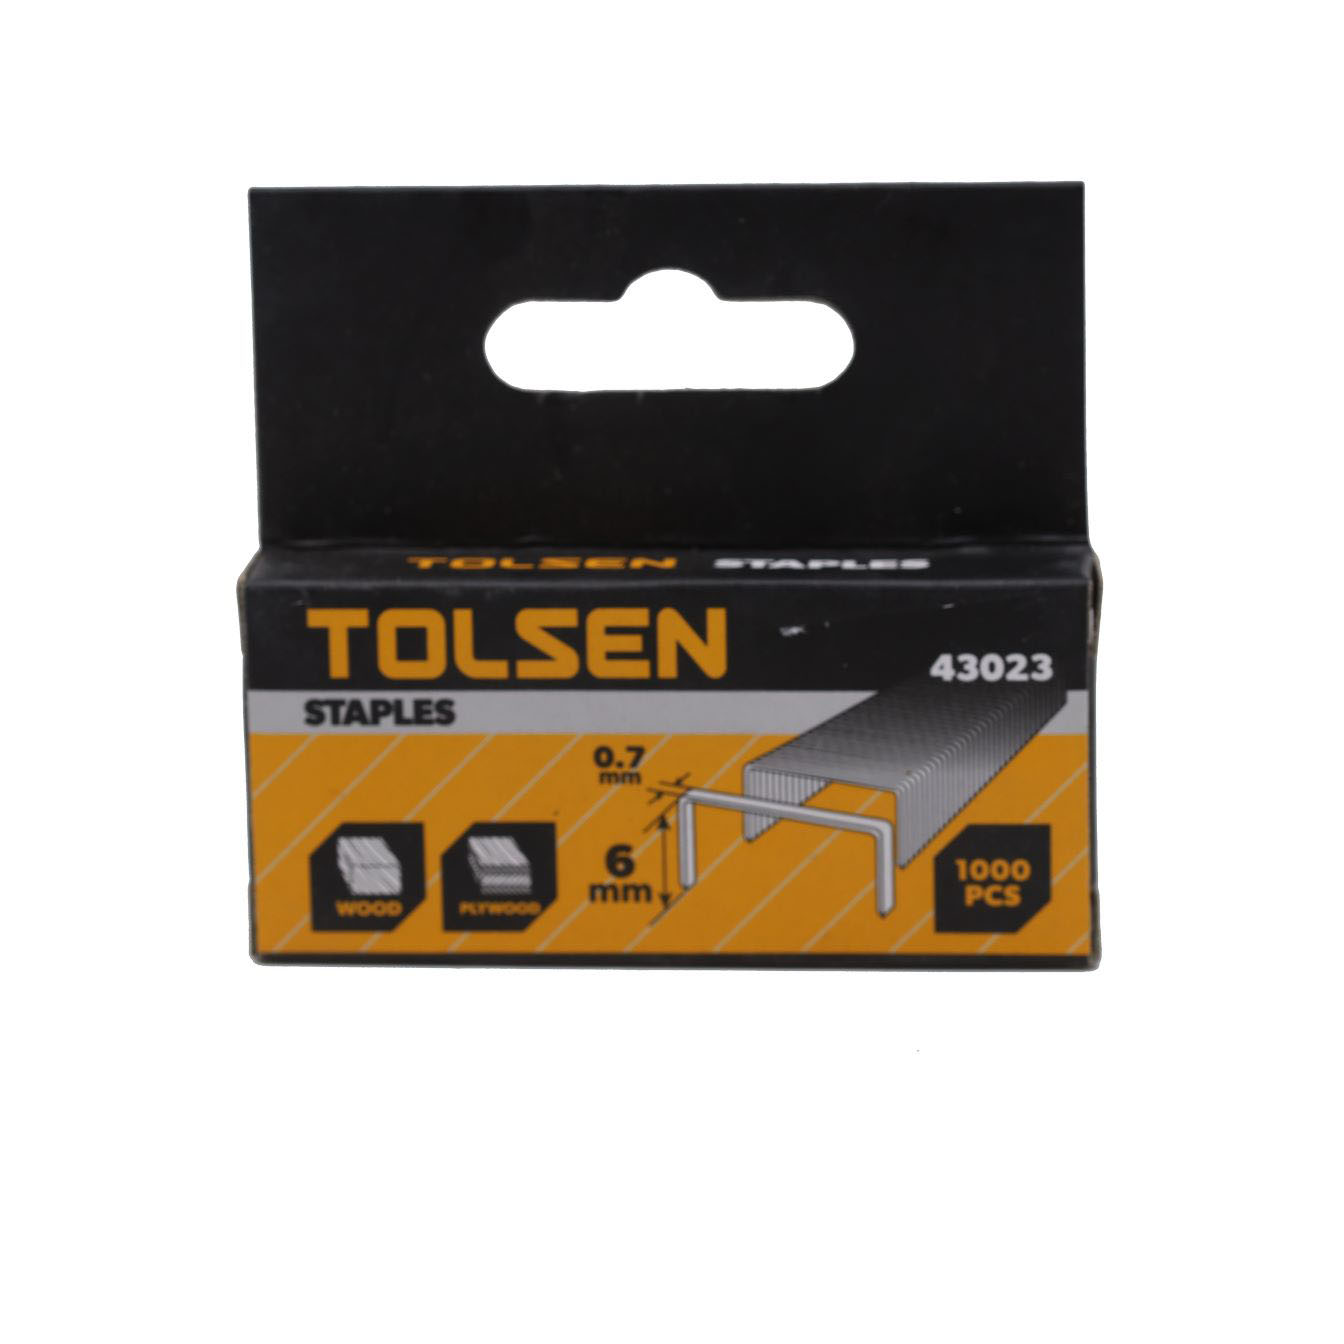 Buy STAPLER PIN 0.7X6MM - TOLSEN Online | Hardware Tools | Qetaat.com